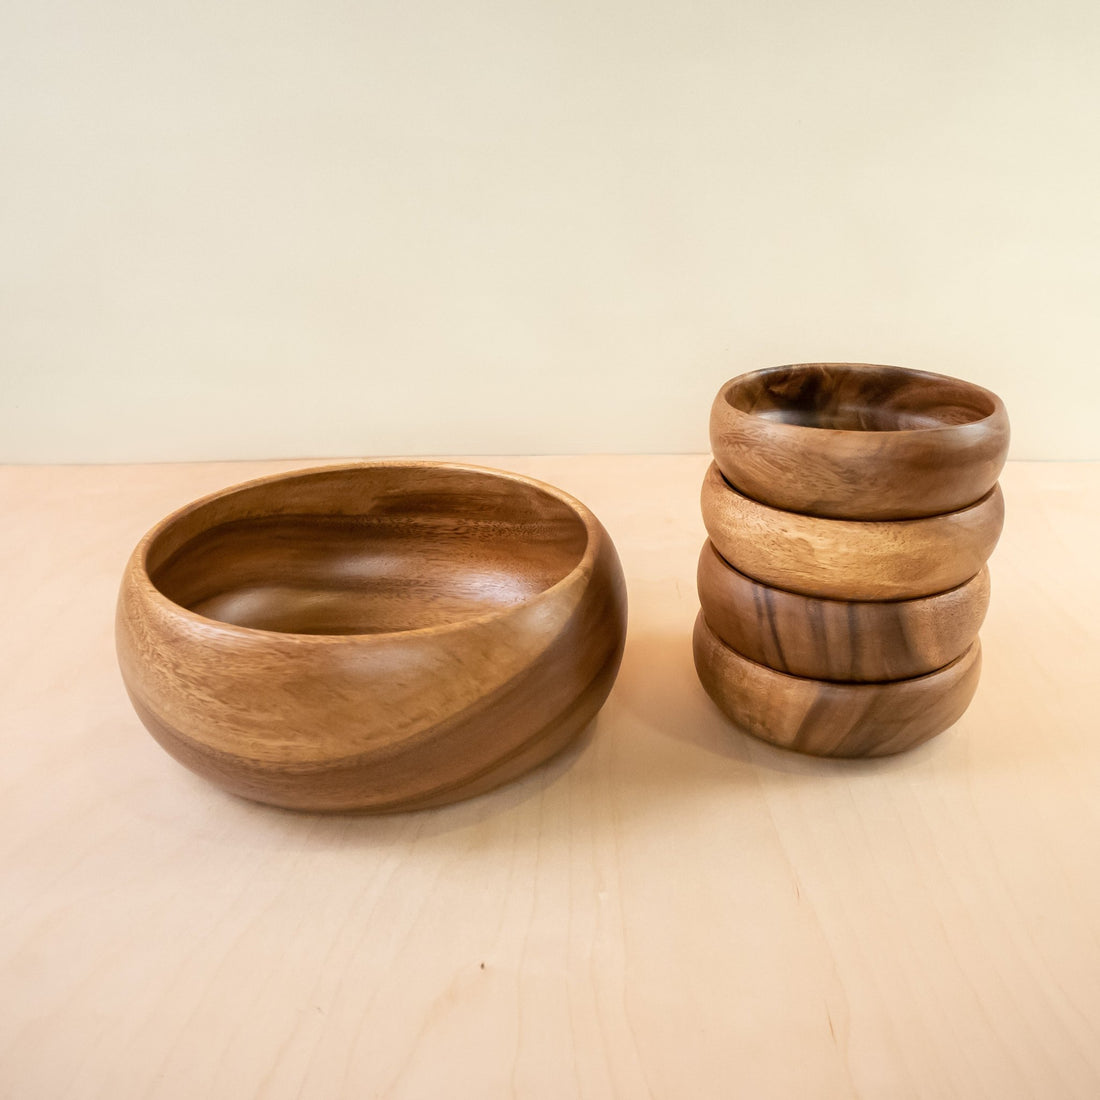 Bowls - Acacia Calabash Bowls, set of 1 large + 4 small bowls | LIKHÂ - LIKHÂ